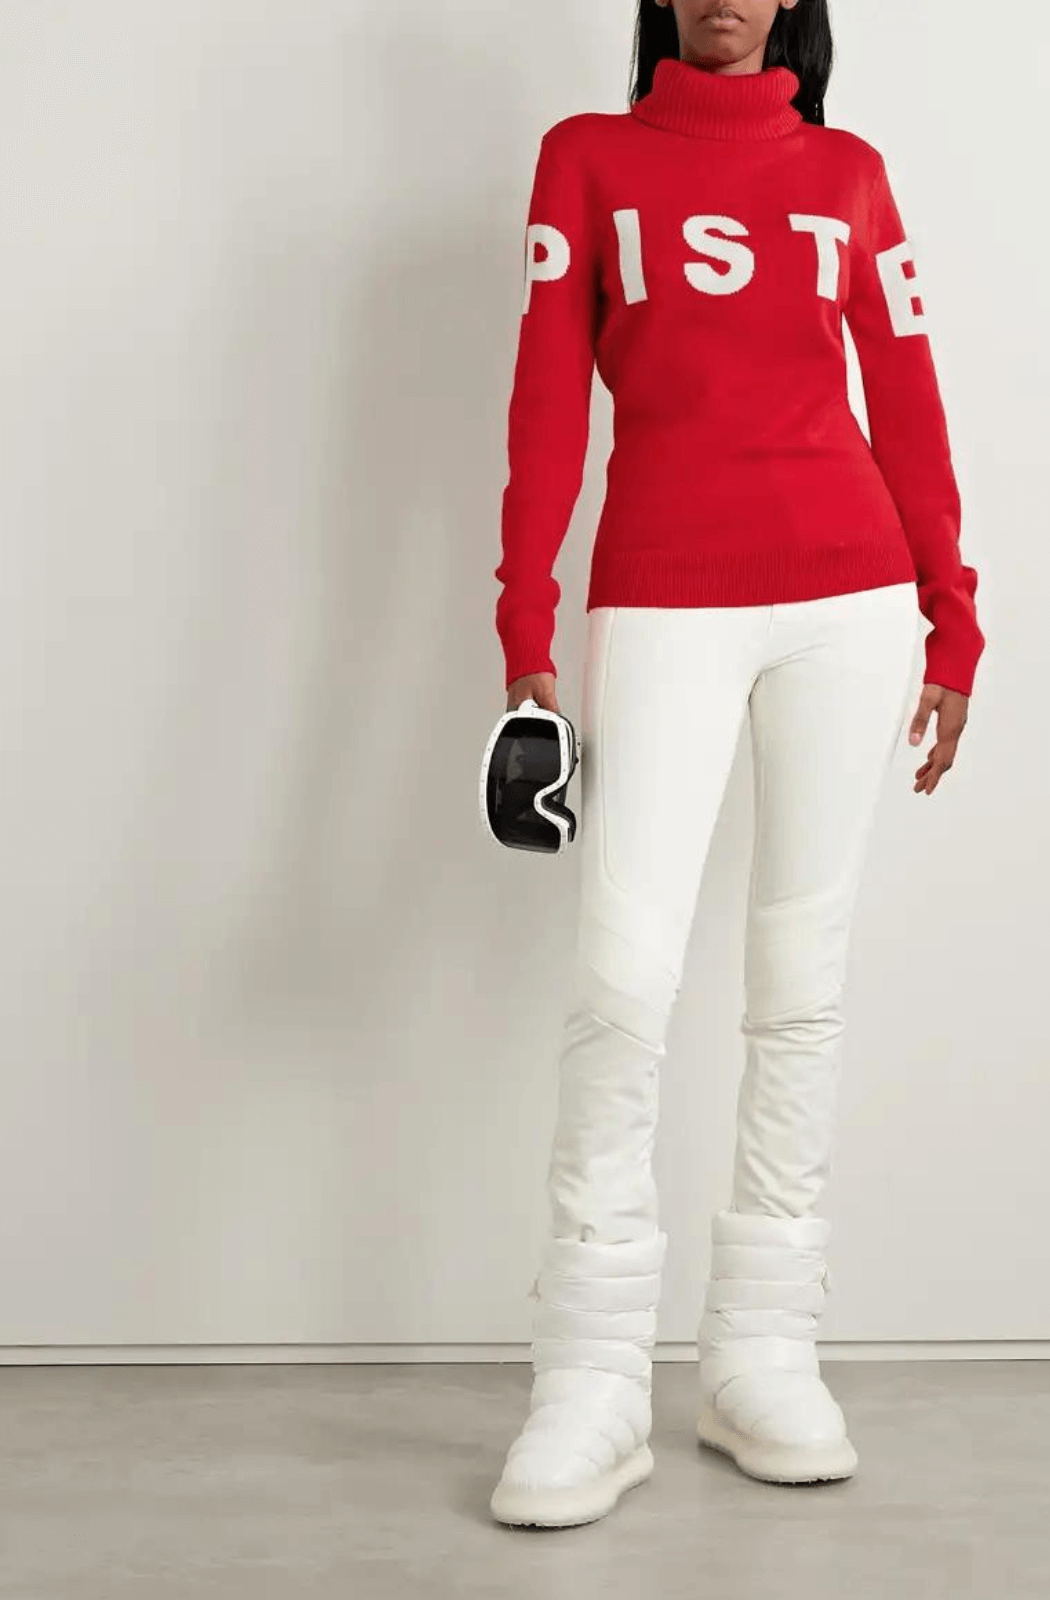 Piste Merino Wool-Jacquard Turtleneck Red Sweater - Large